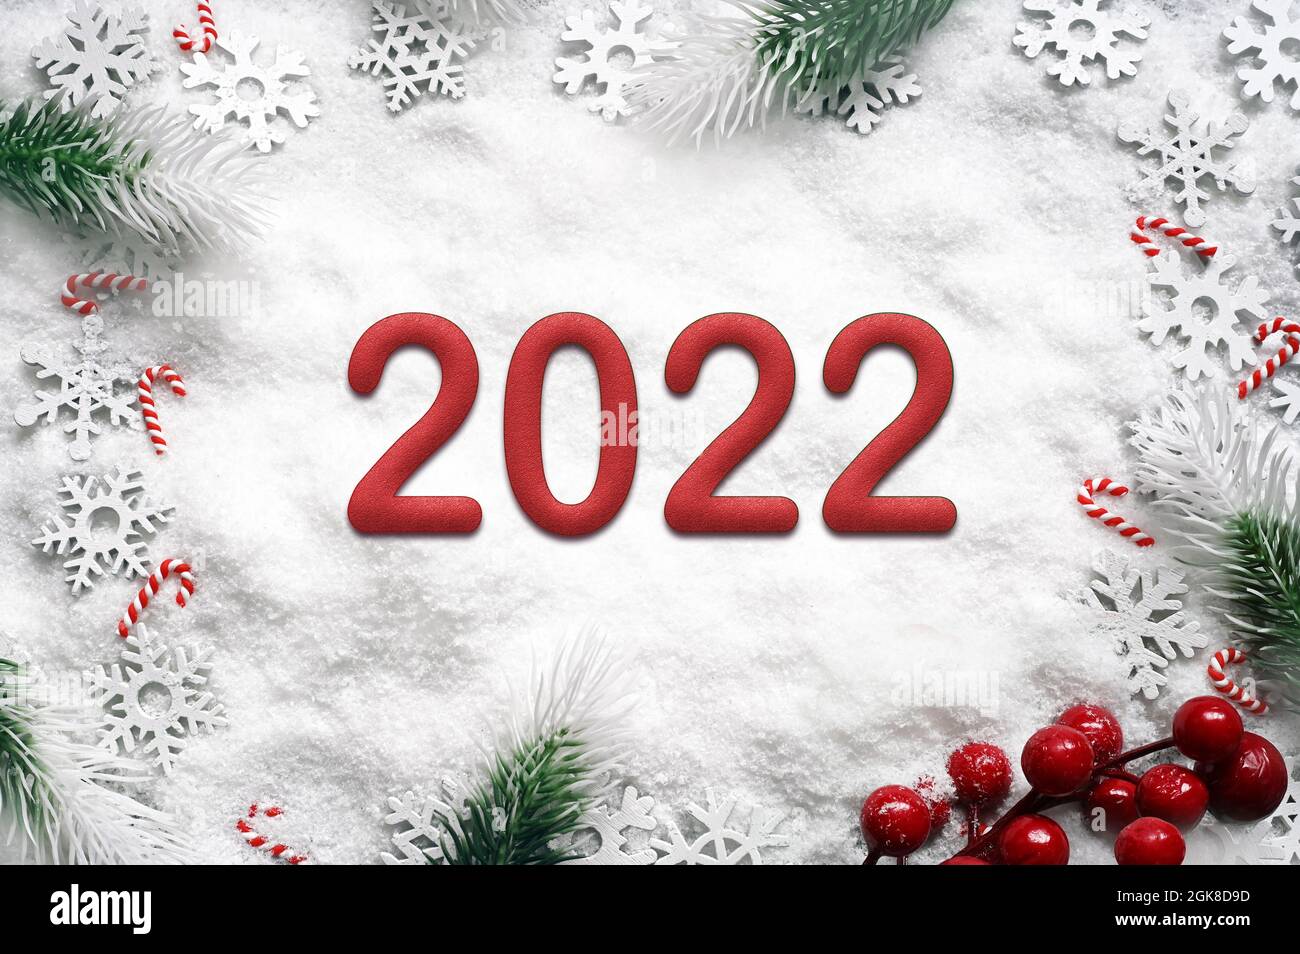 Rama de abeto con decoraciones navideñas sobre fondo blanco. 2022. Foto de stock